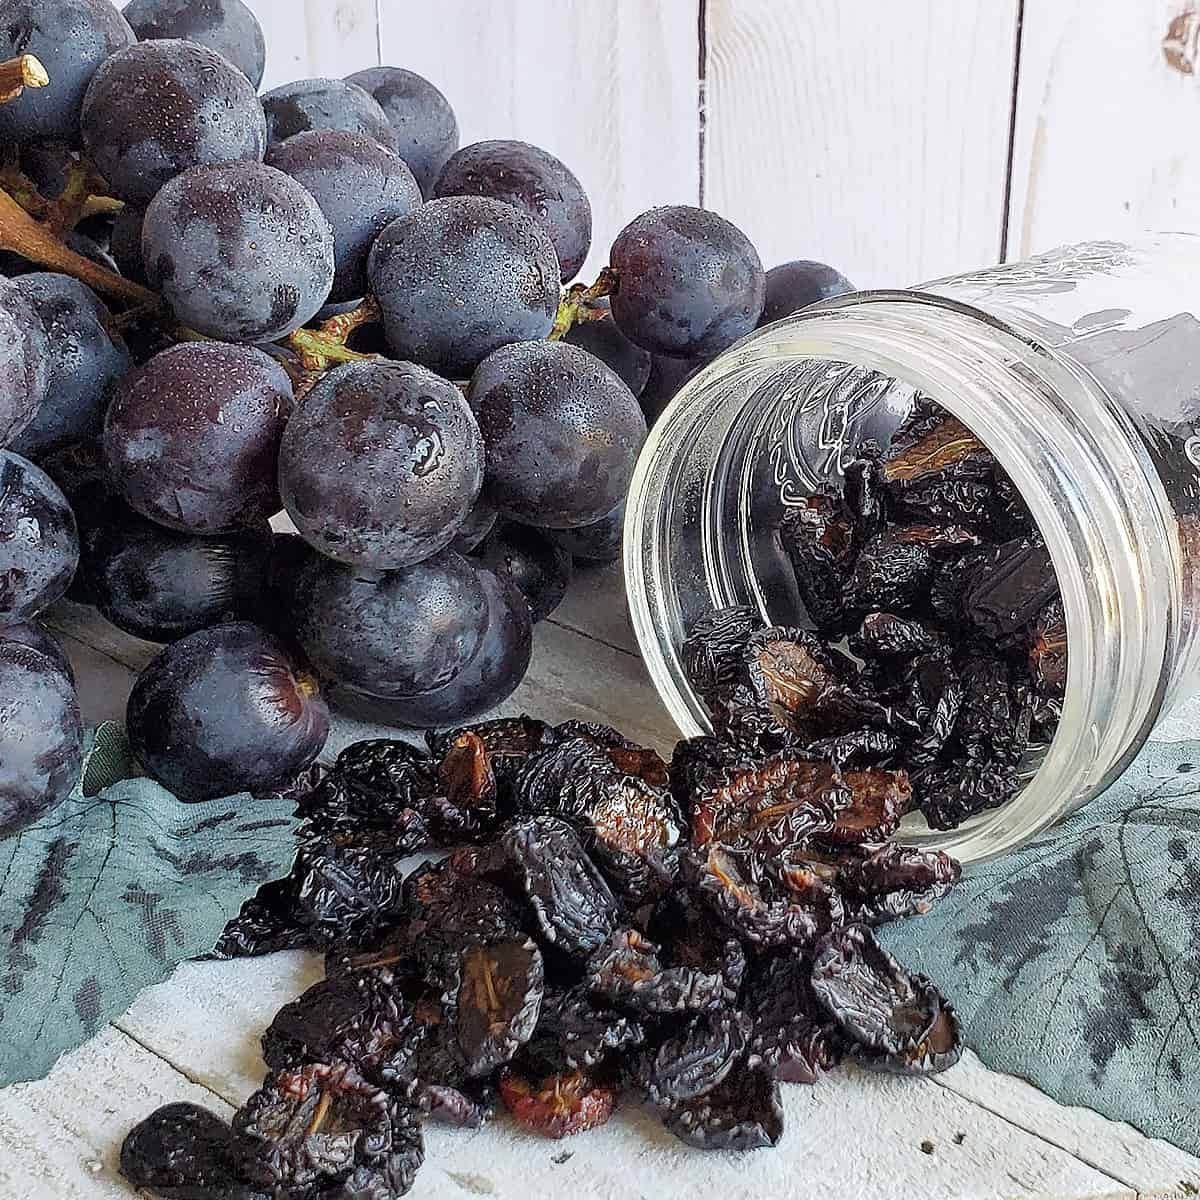 Homemade raisins spilled from a glass jar.